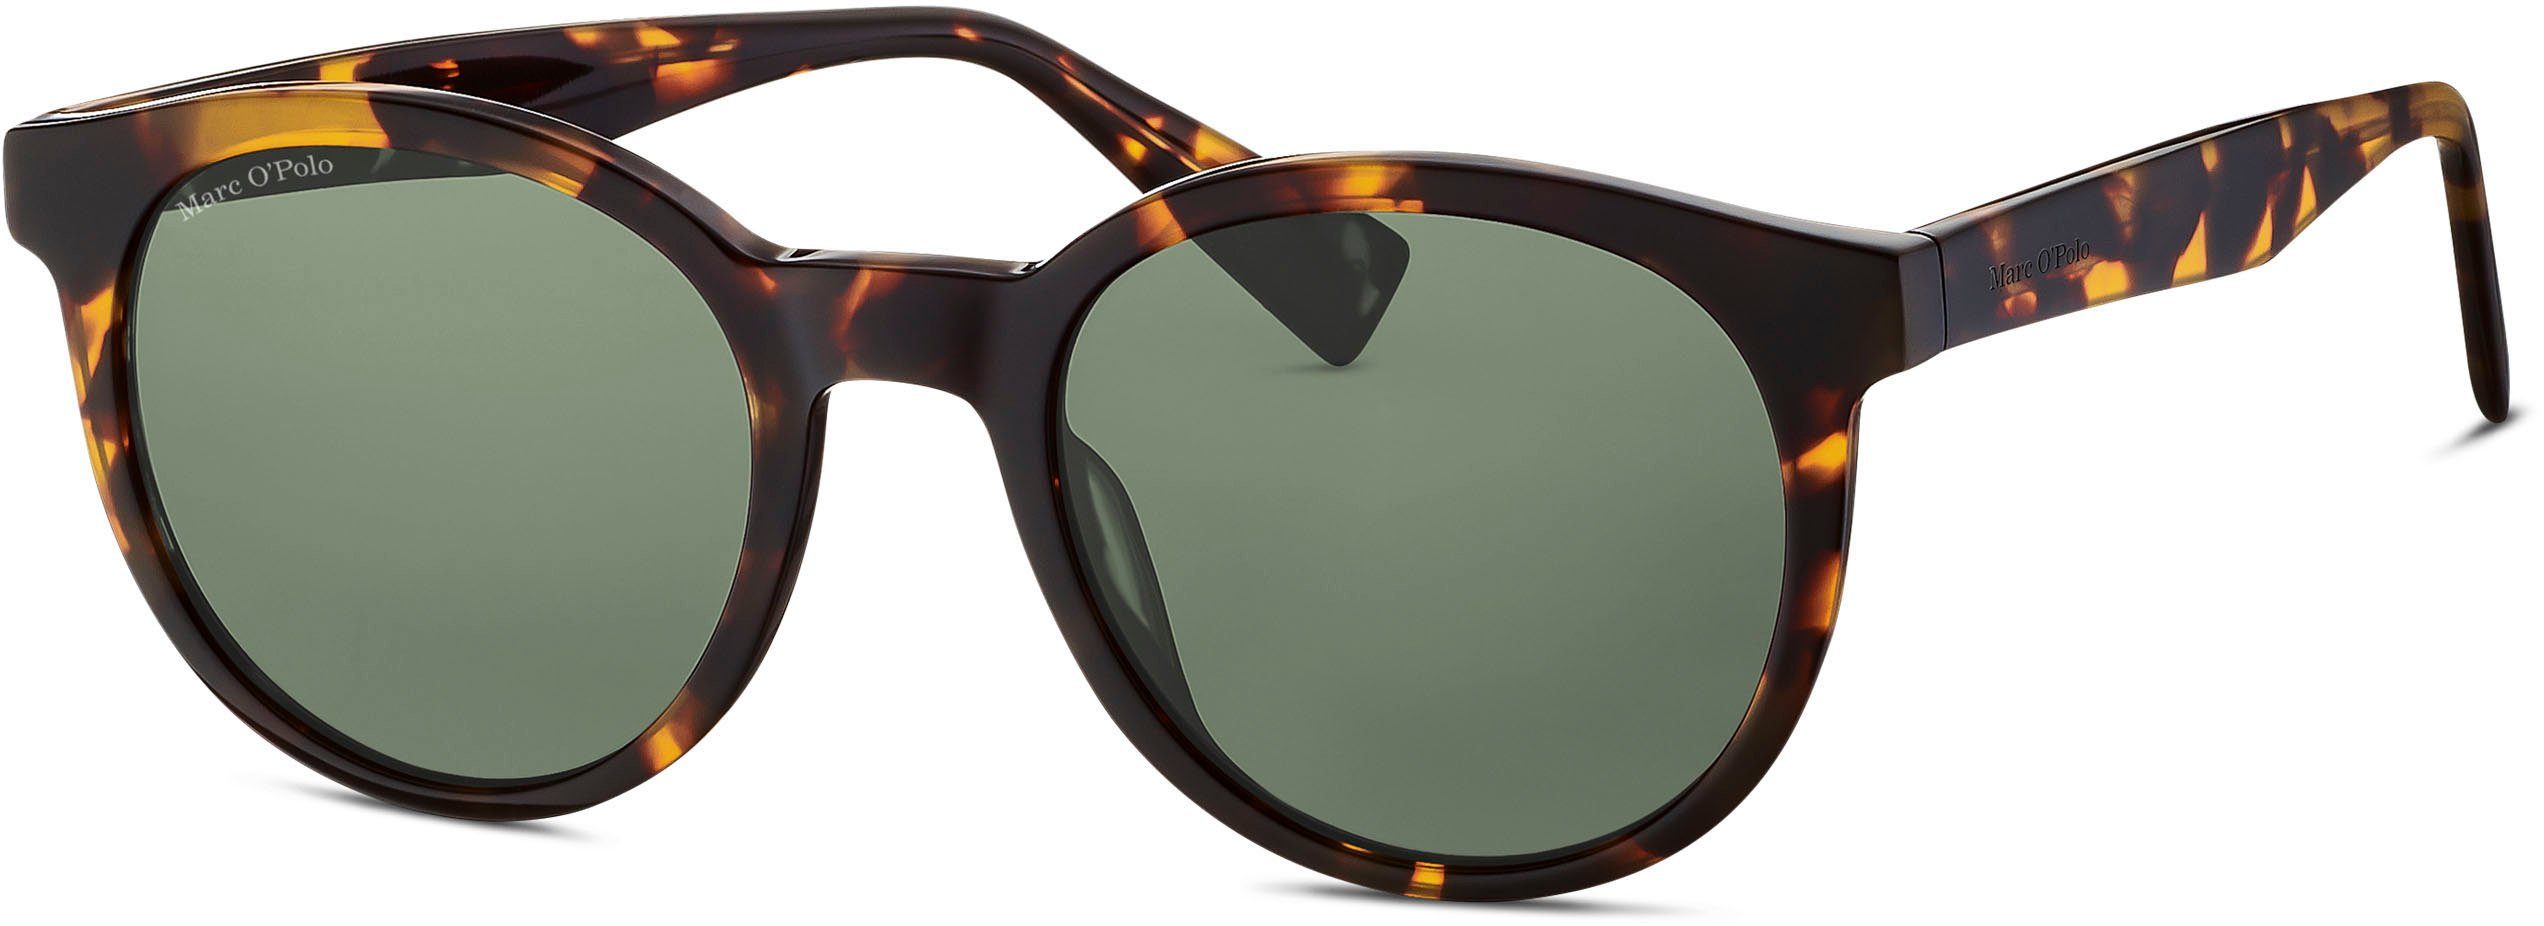 Marc O'Polo Sonnenbrille Modell 506185 Panto-Form braun-grün